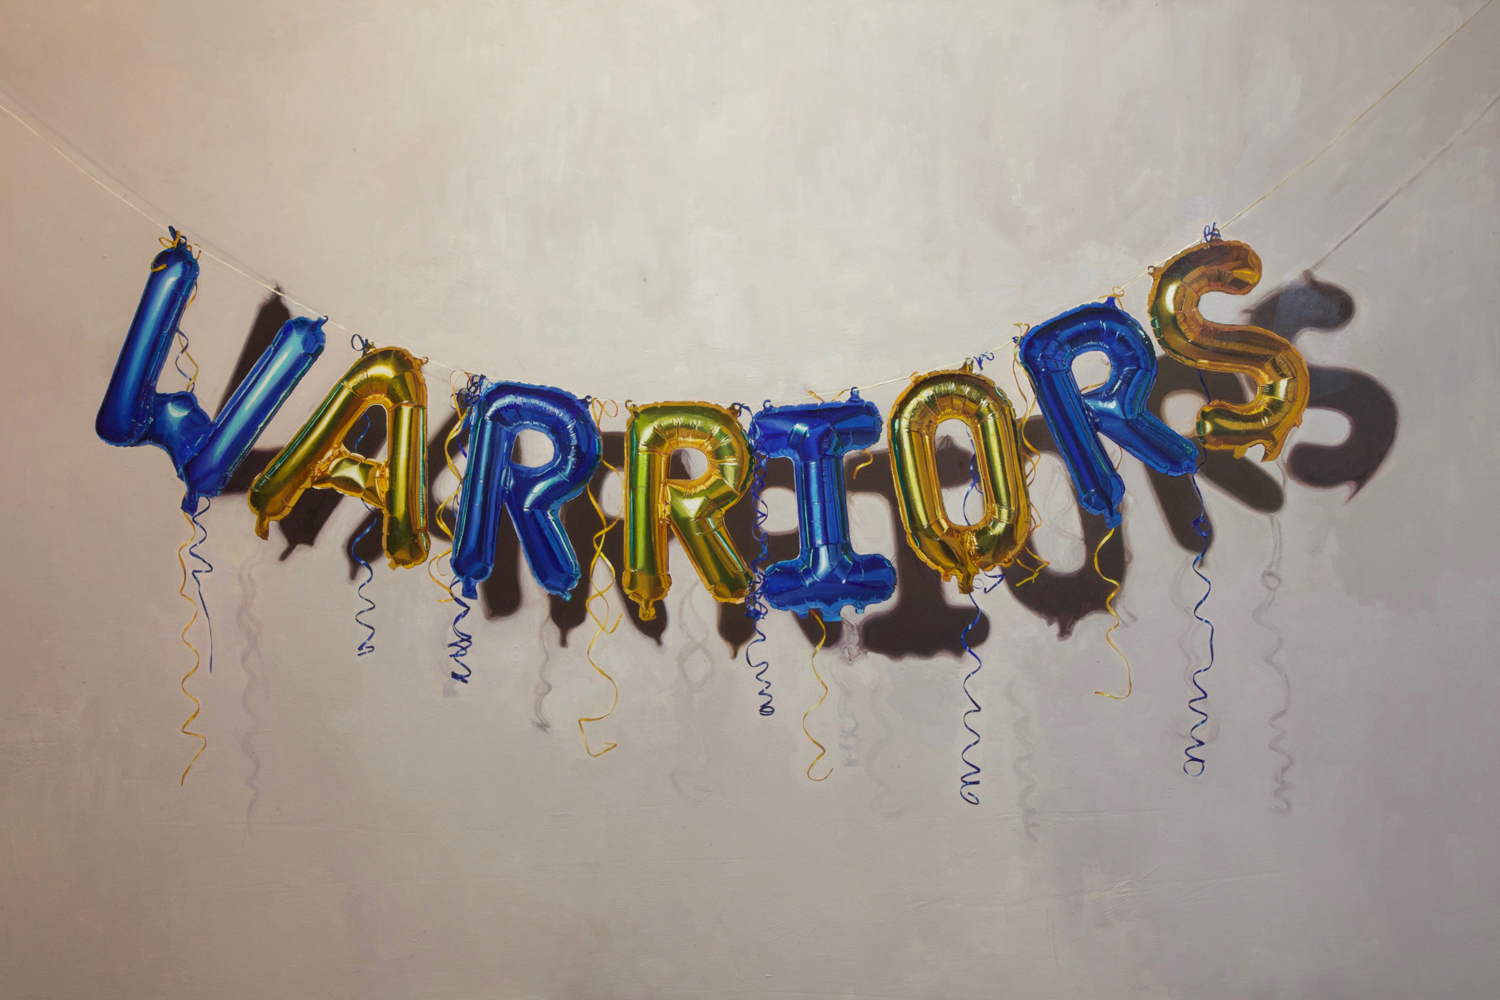 Go Warriors!